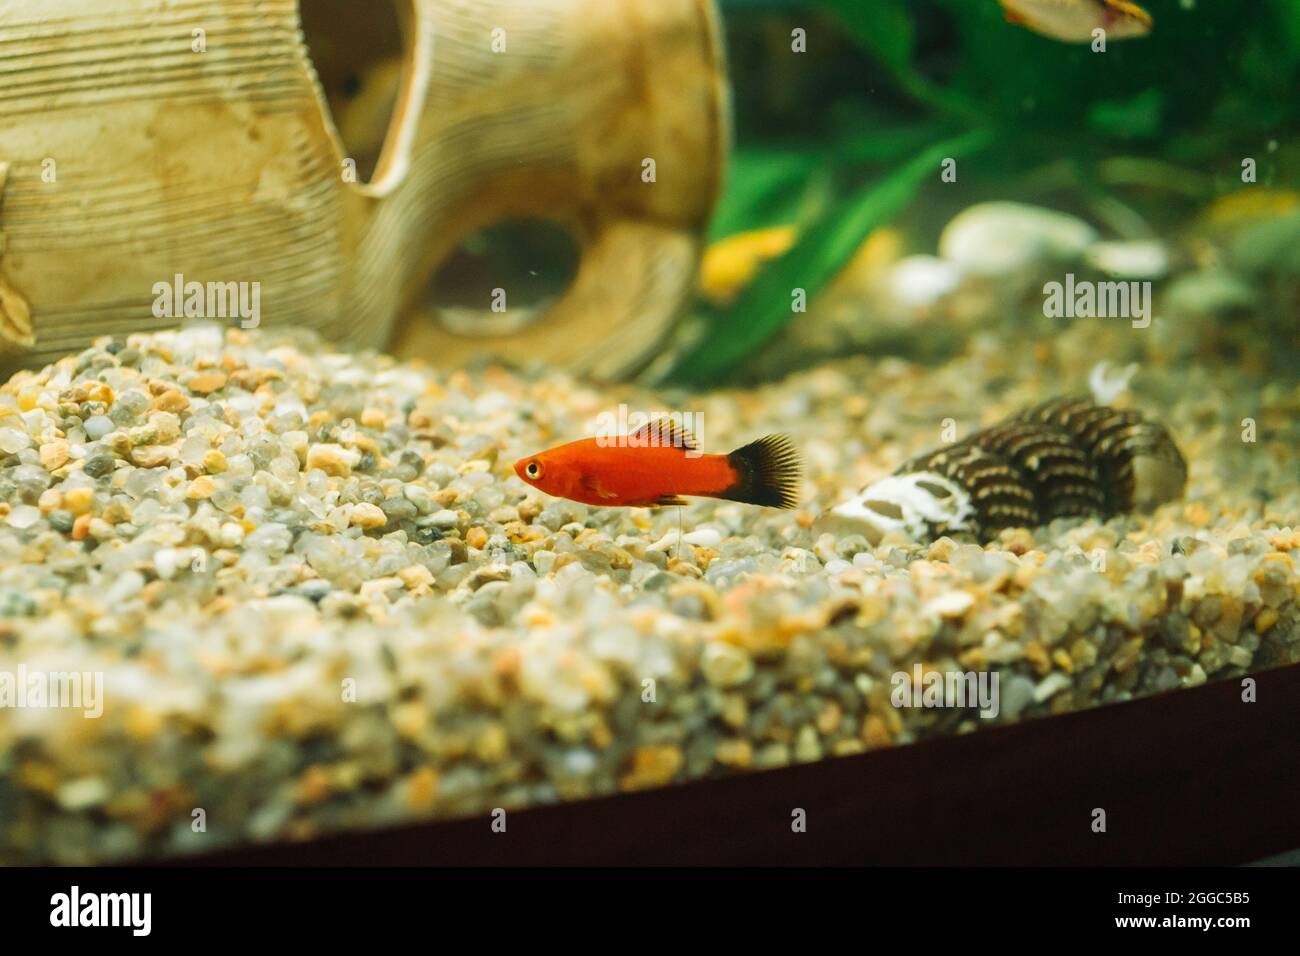 Gros plan d'un petit poisson rouge nageant dans un aquarium Photo Stock -  Alamy